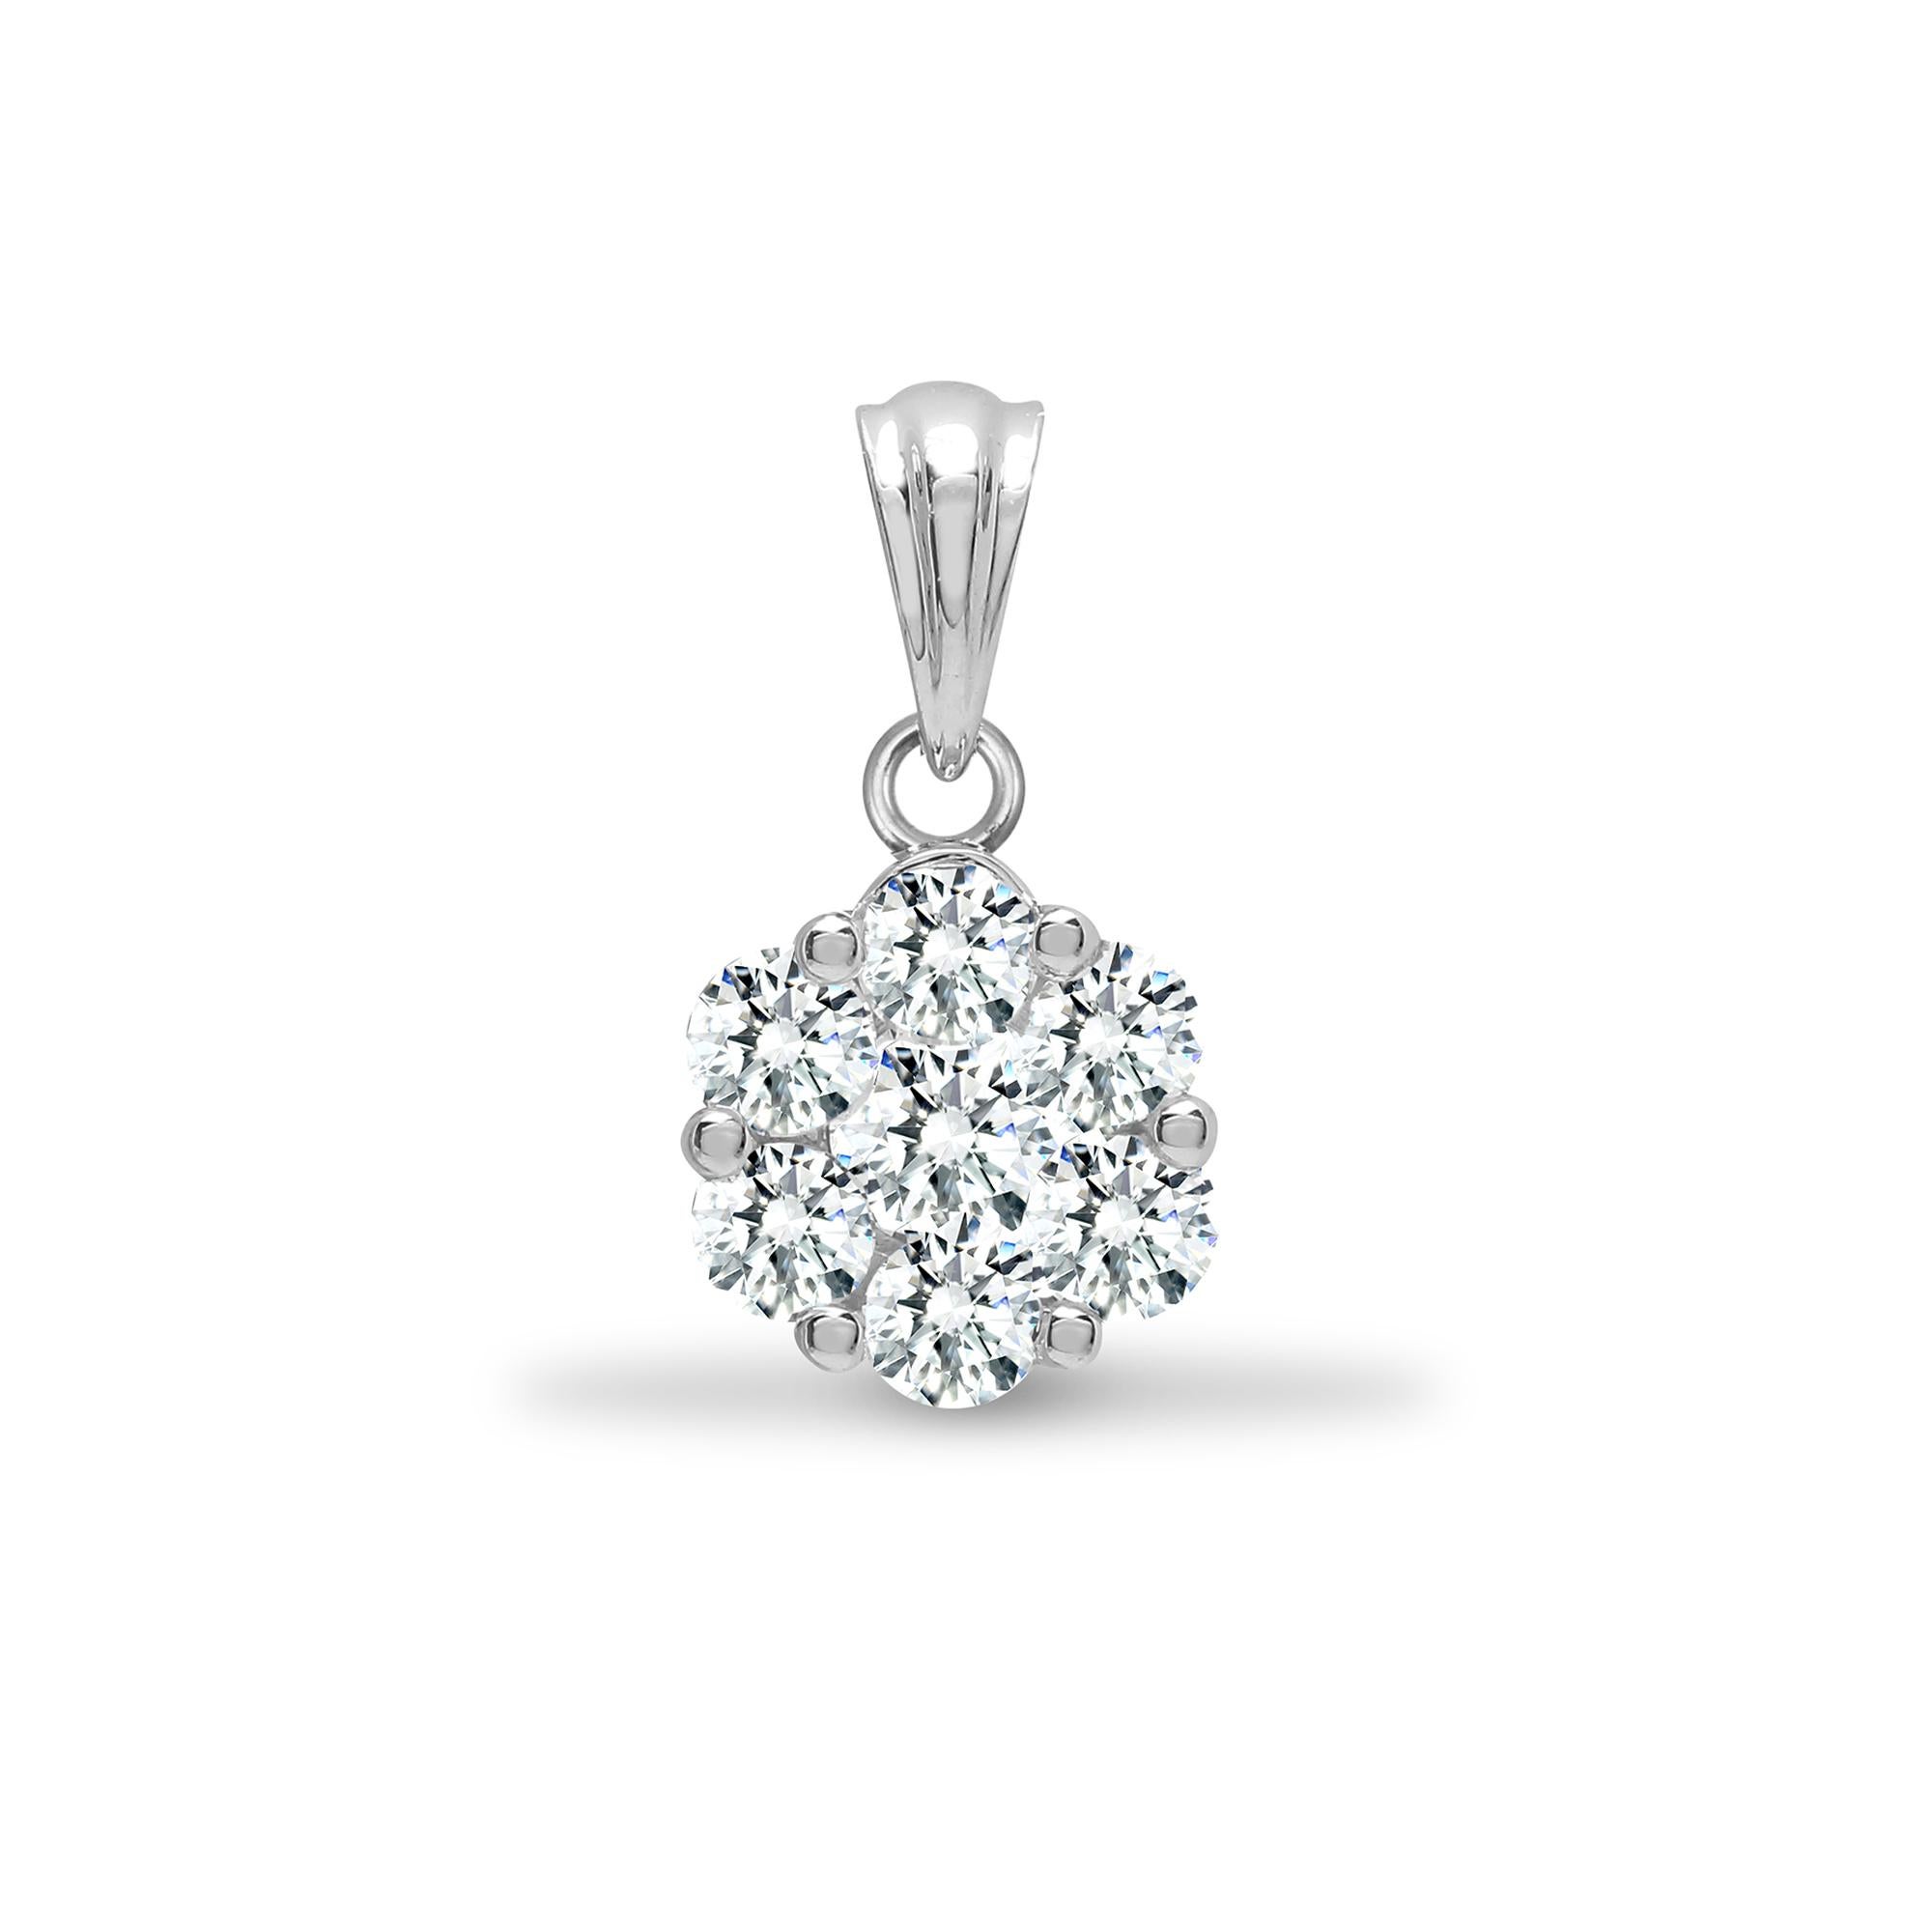 Ce magnifique pendentif en forme de fleur de 1,00 carat comporte 7 diamants ronds de taille brillant de couleur G/H et de pureté SI1. Ce collier est accompagné d'une superbe chaîne en or blanc 18 carats. Il convient à toutes les occasions et porte